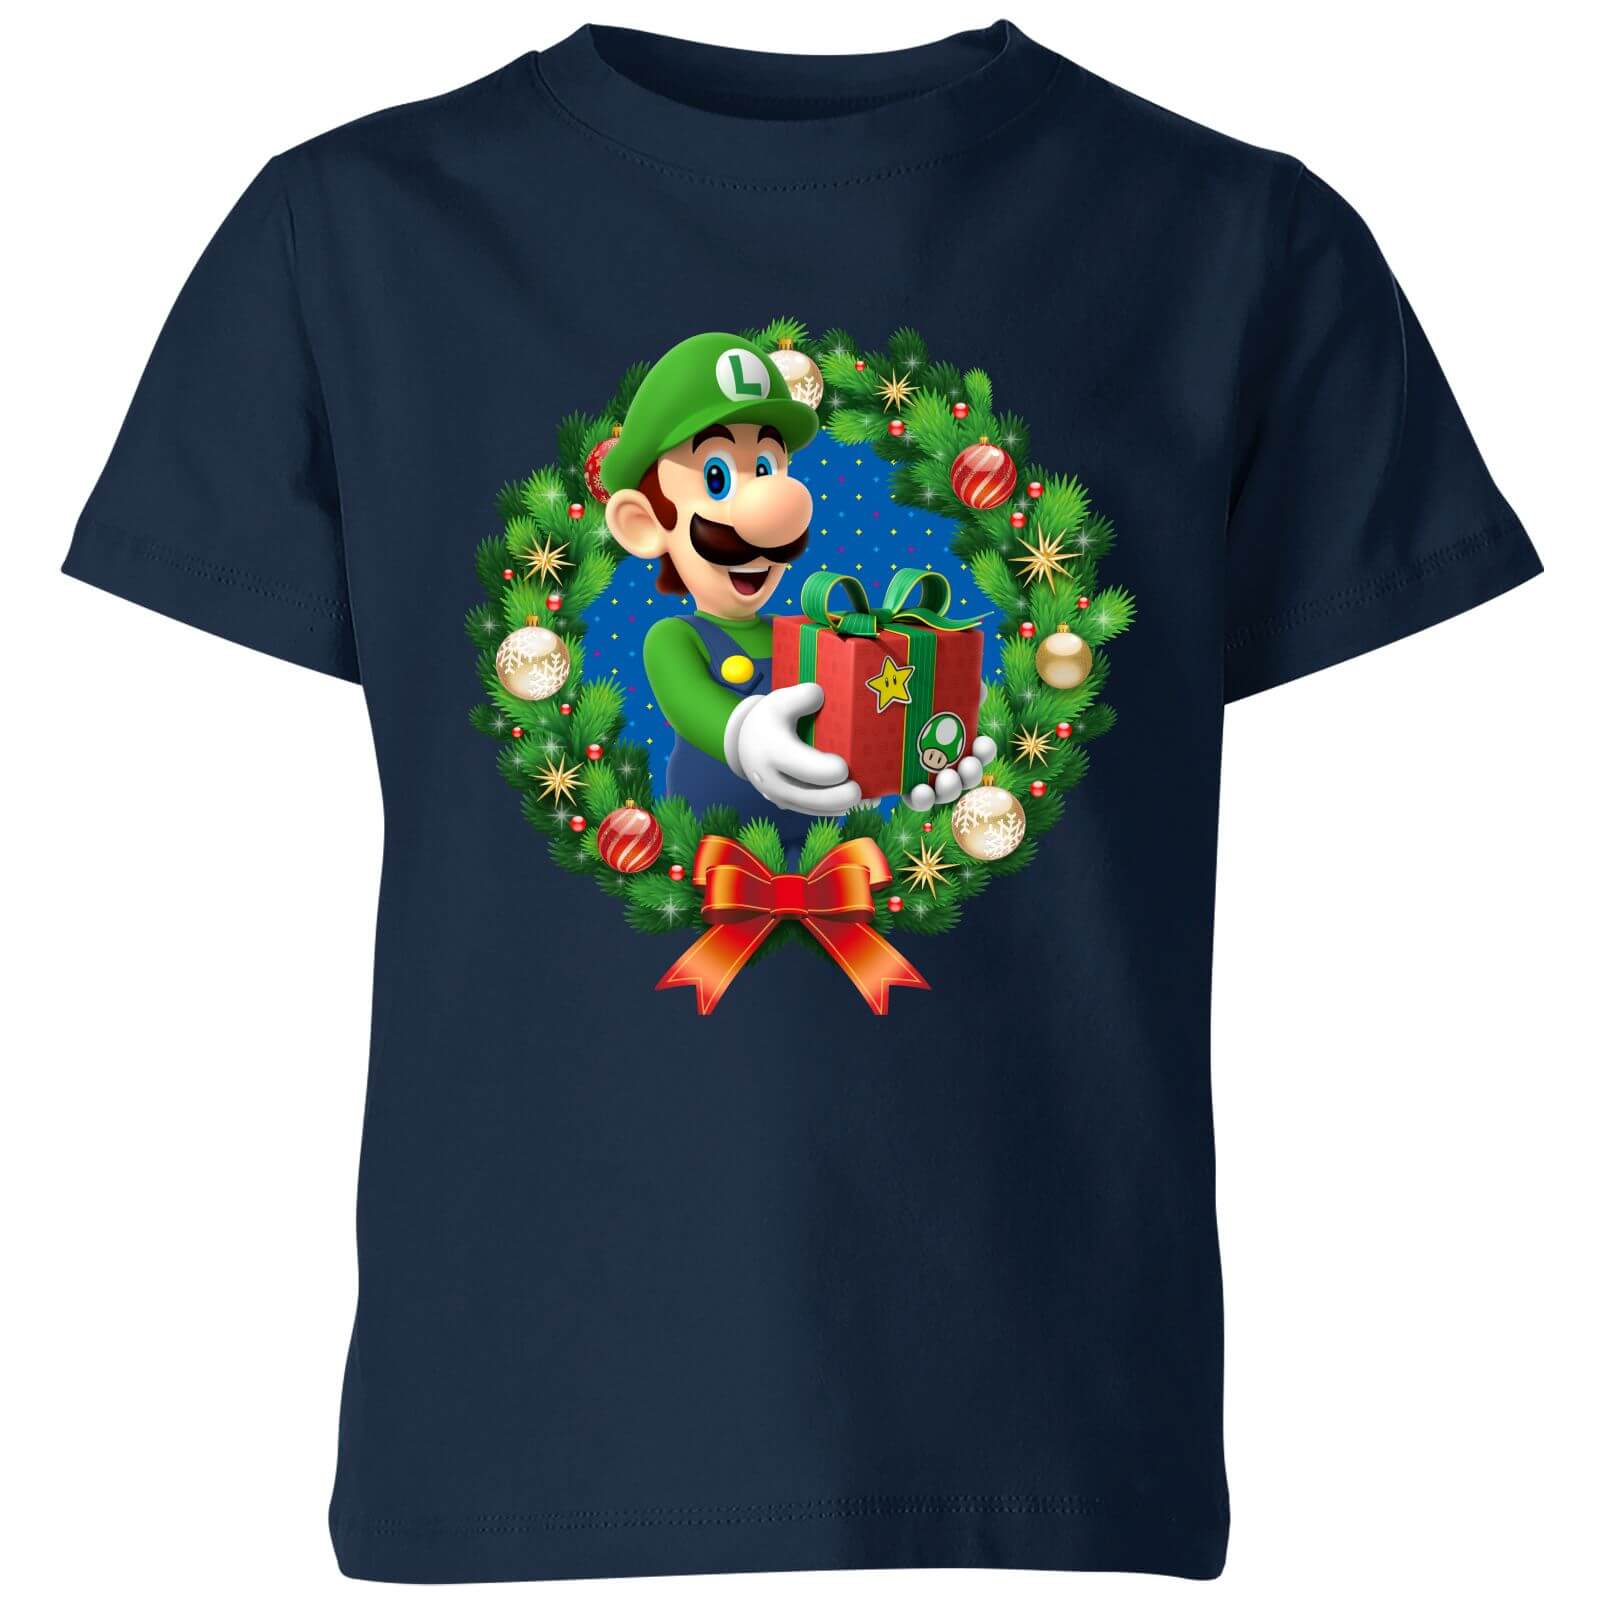 Nintendo Super Mario Luigi Present Kids' T-Shirt - Navy - 9-10 Years